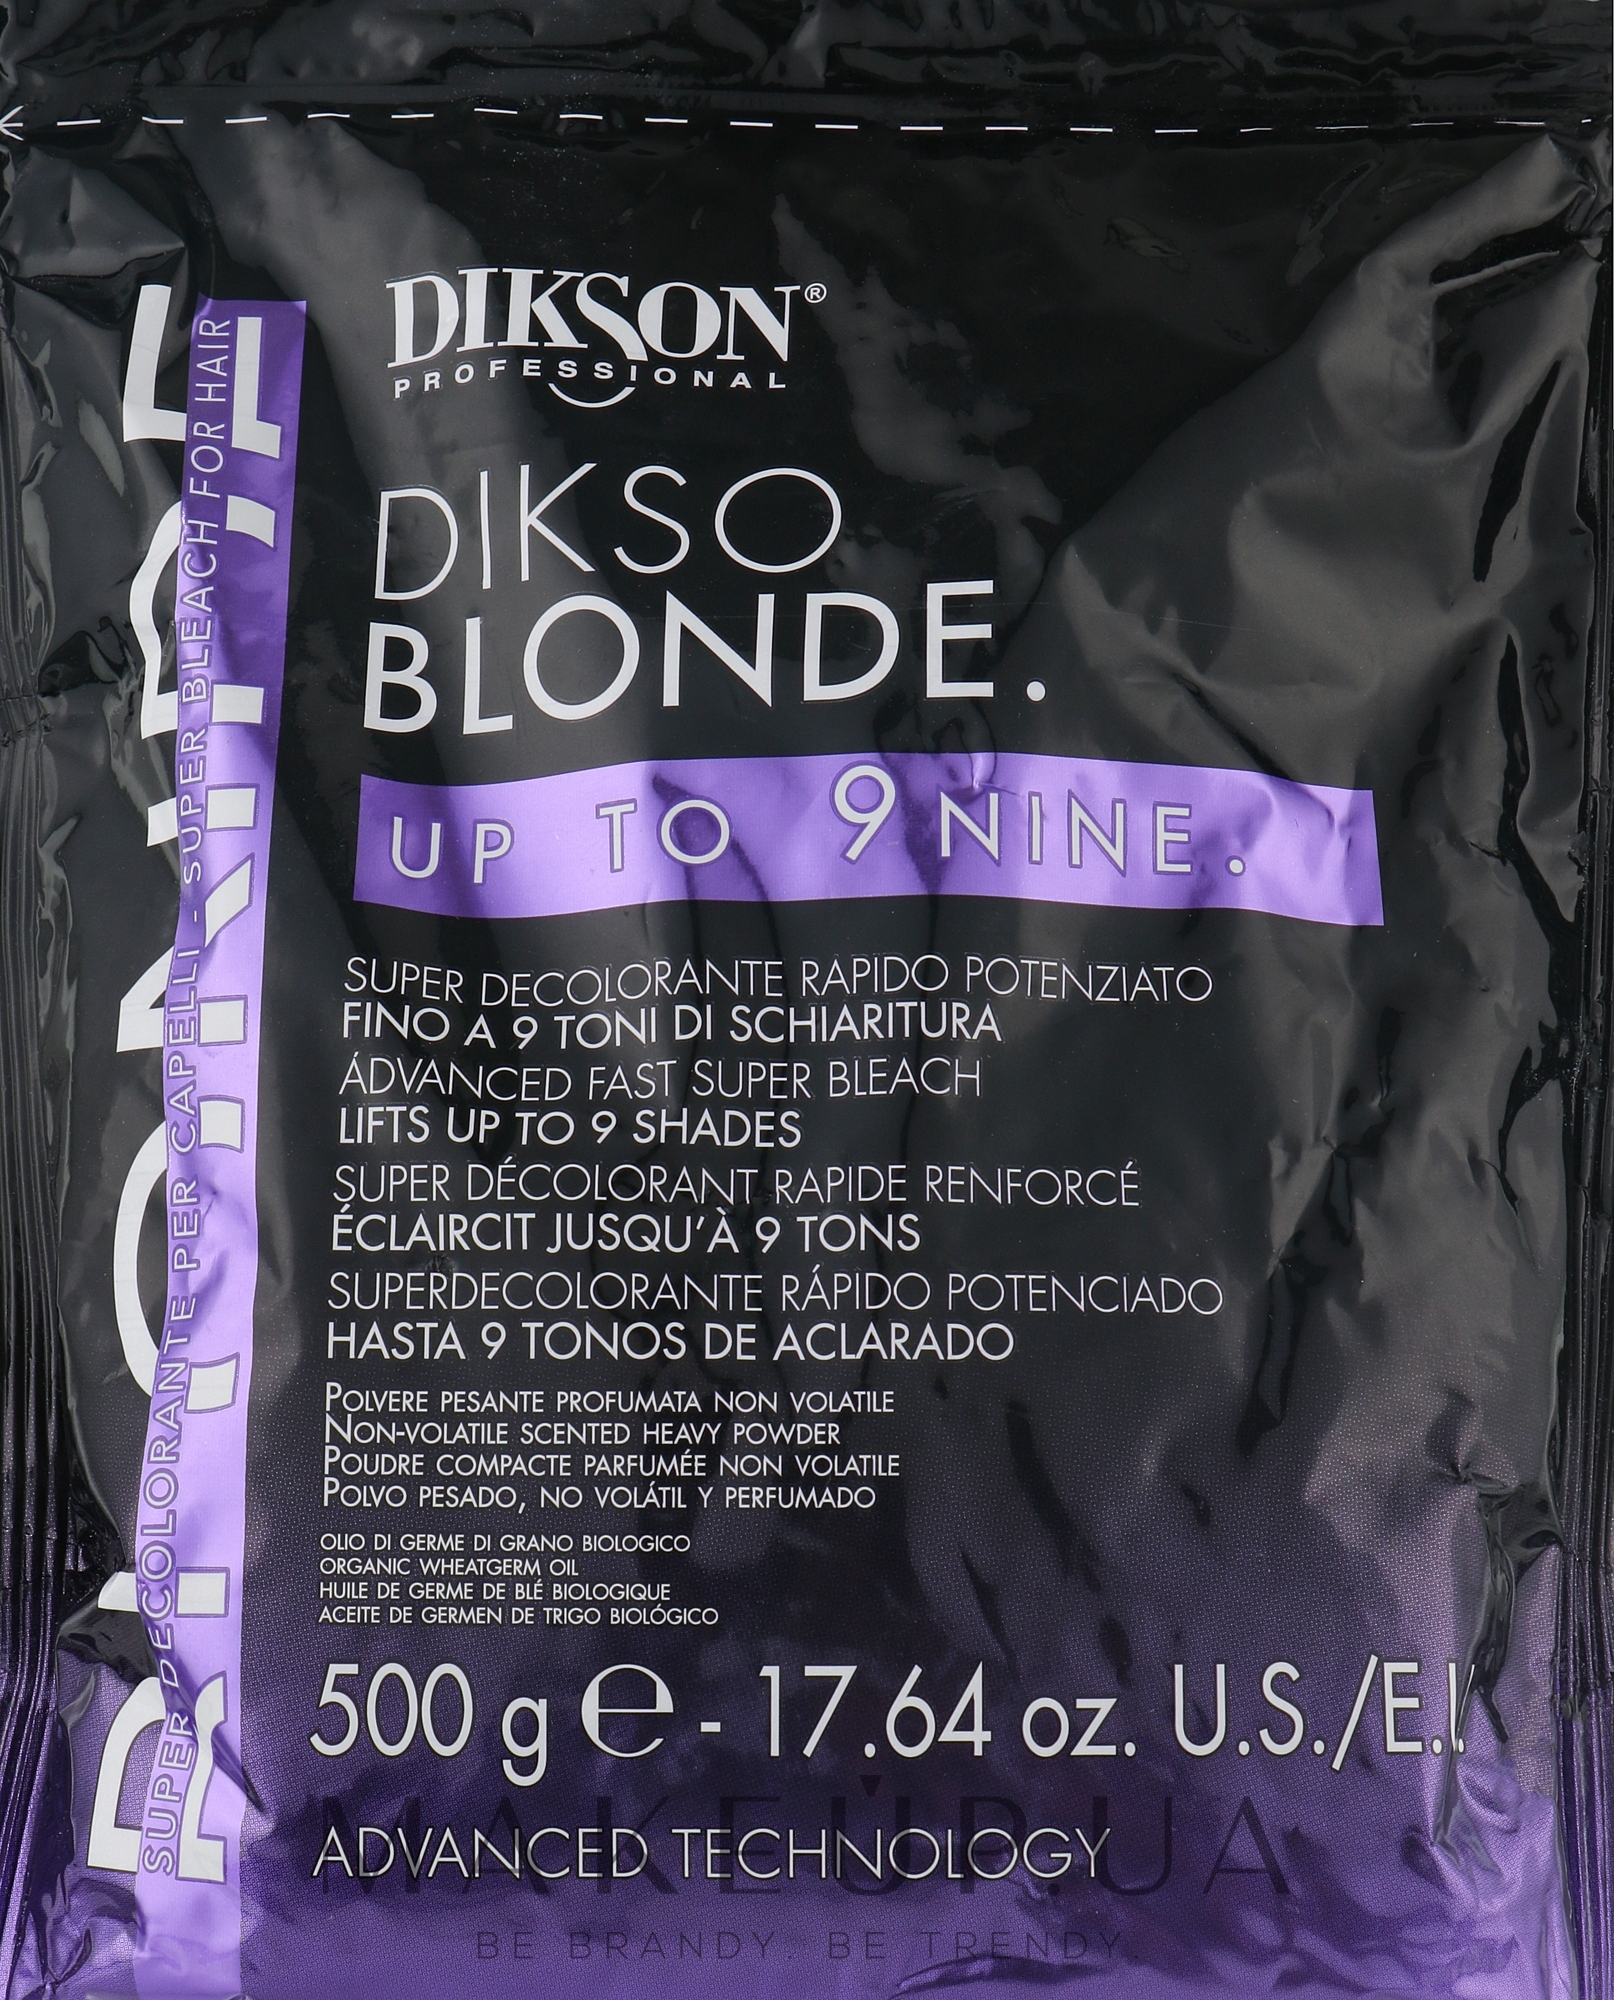 Посилений освітлювальний порошок для волосся - Dikson Dikso Blonde Bleaching Powder Up To 9 (зіп-пакет) — фото 500g